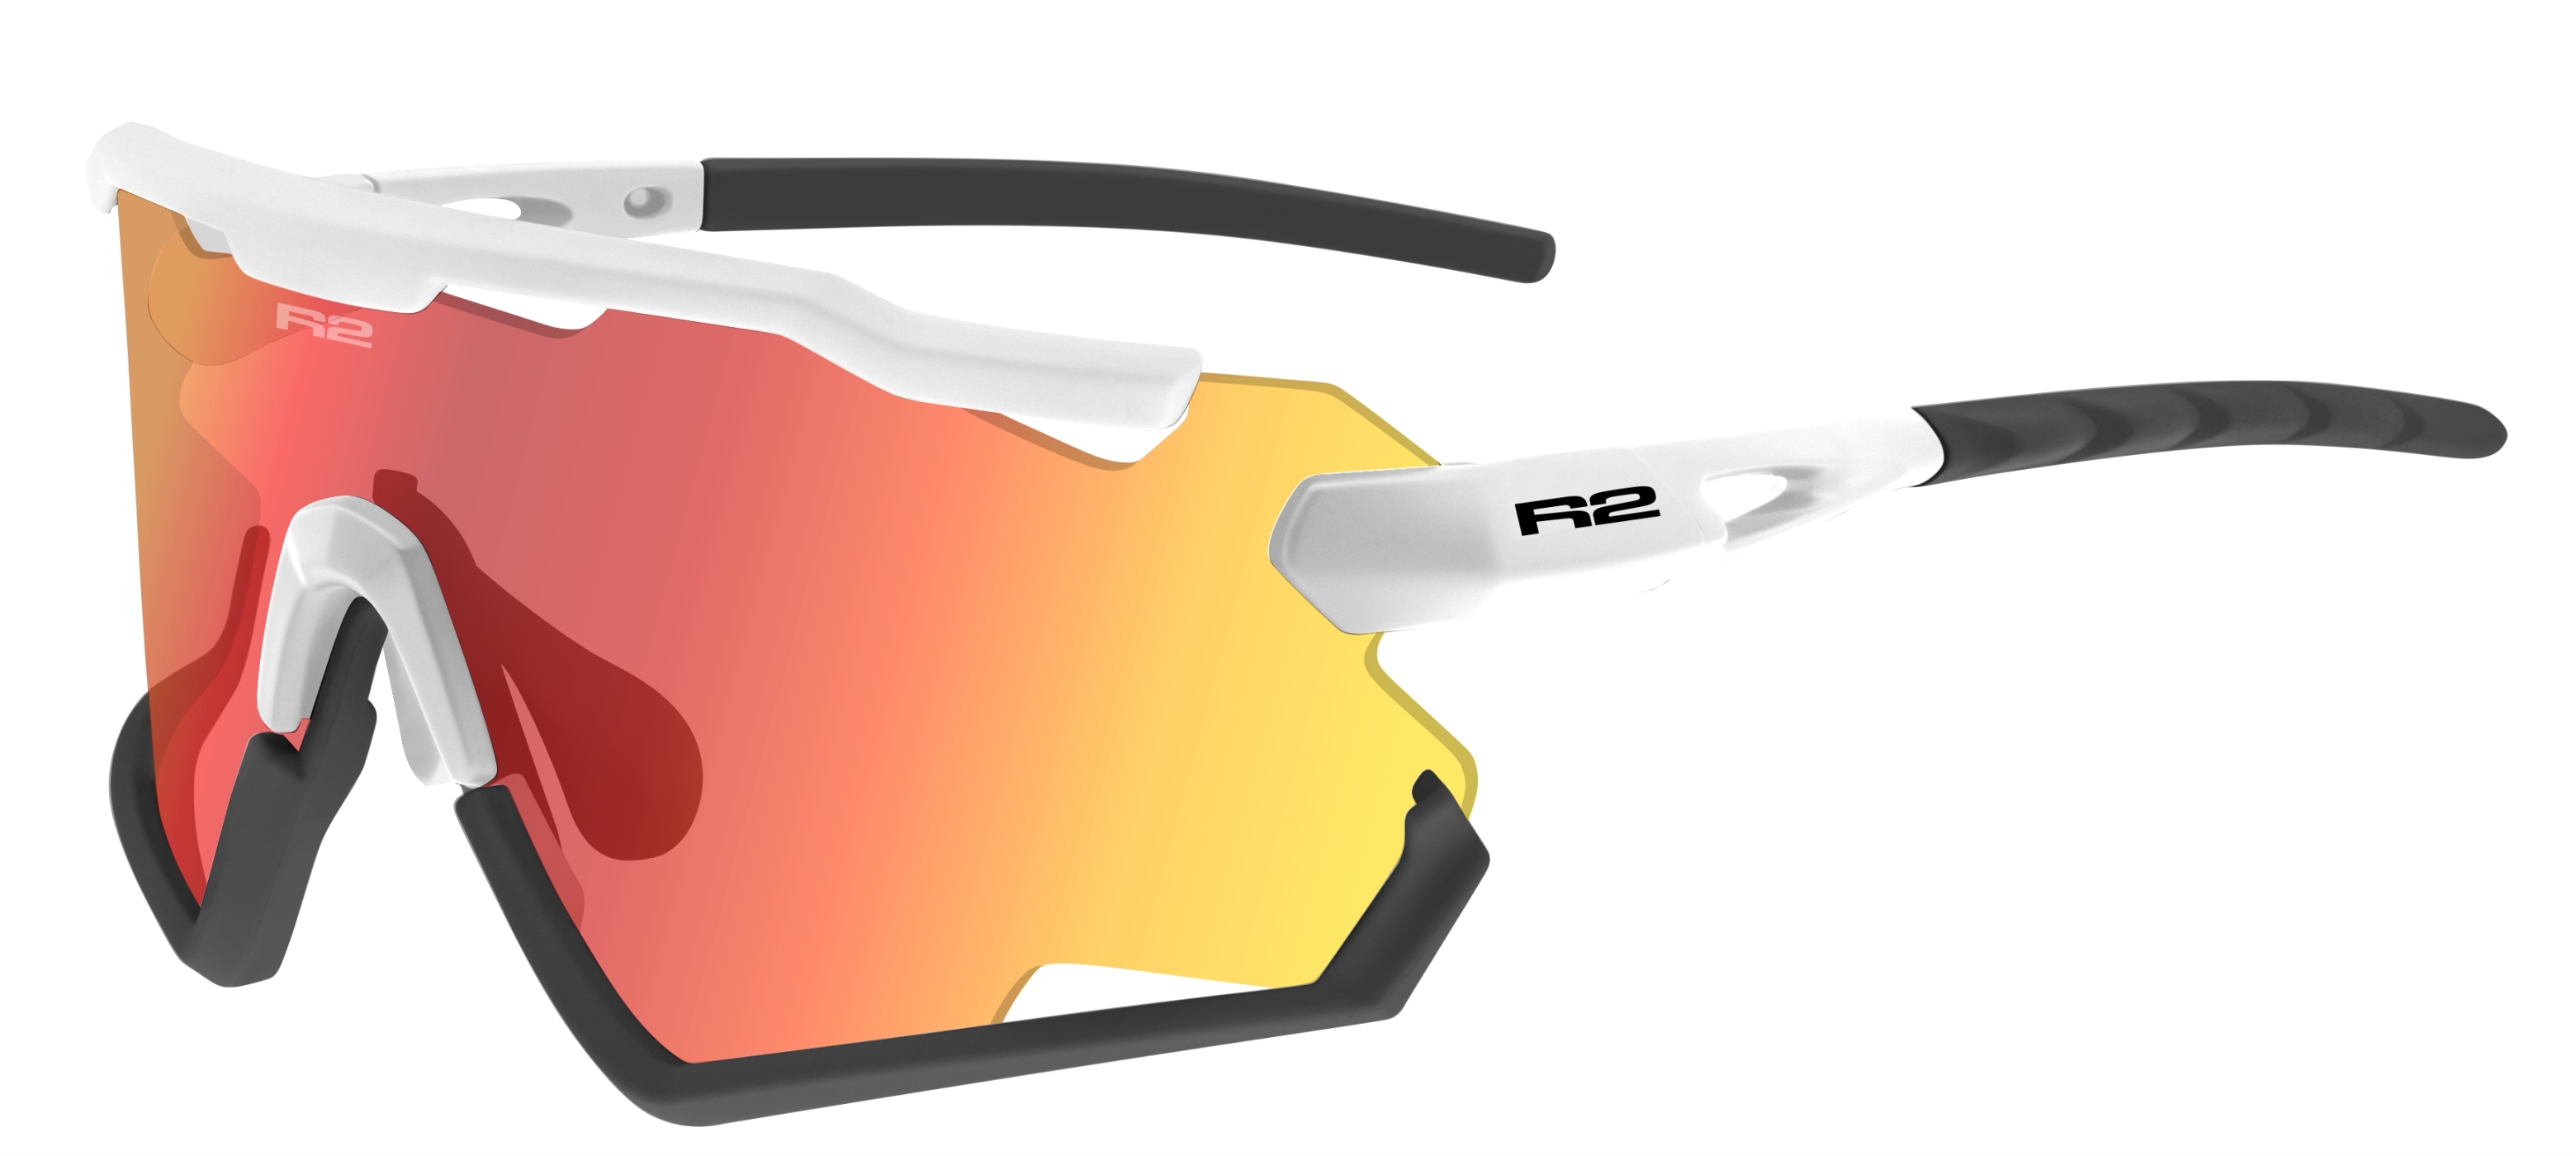 Photochromatic sunglasses  R2 DIABLO AT106E standard